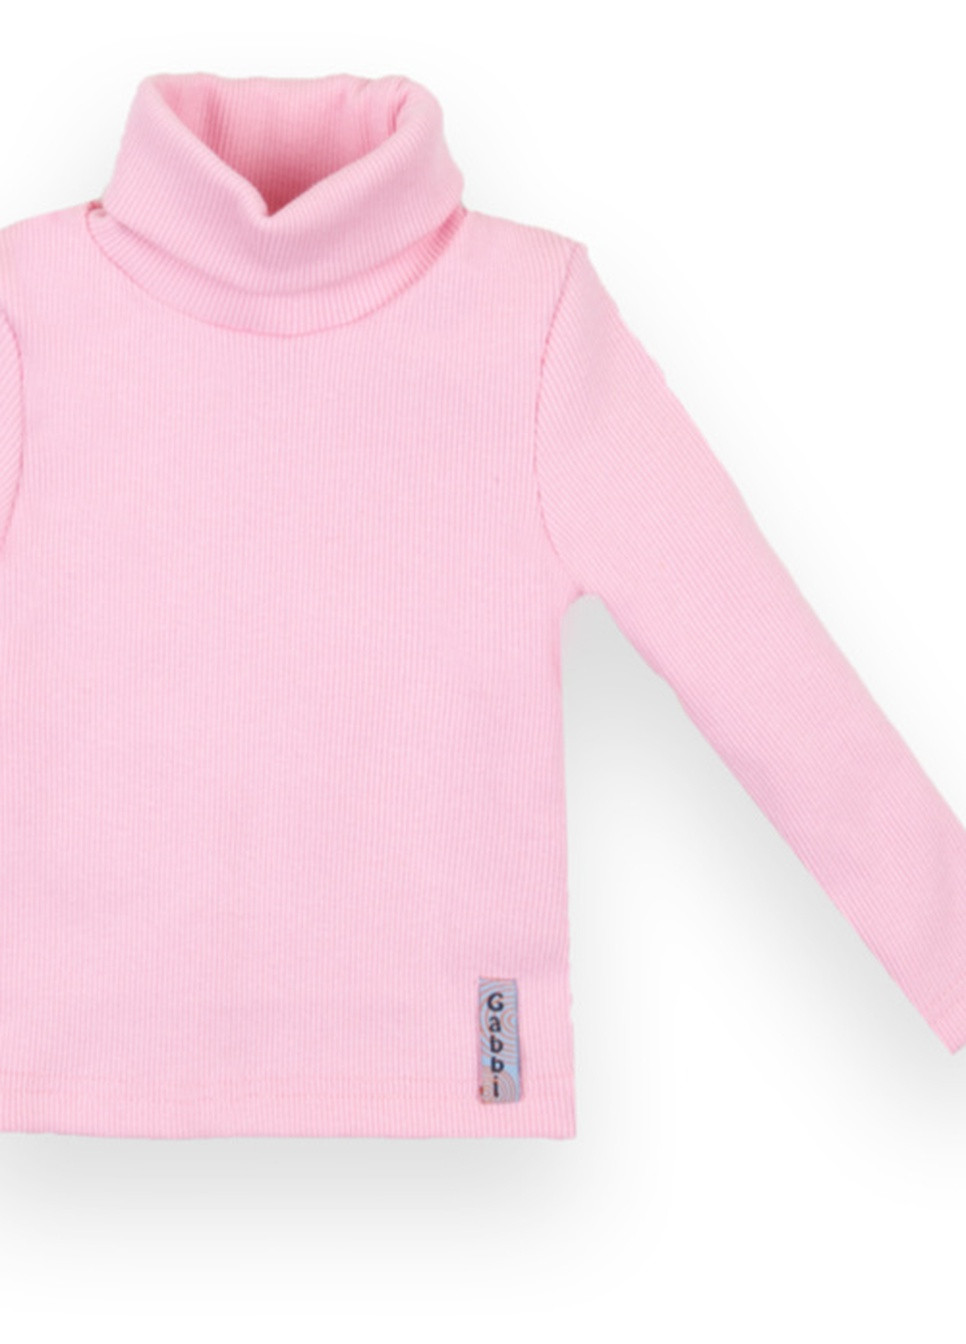 Розовый демисезонный детский свитер sv-21-10-2 *стиль* Габби